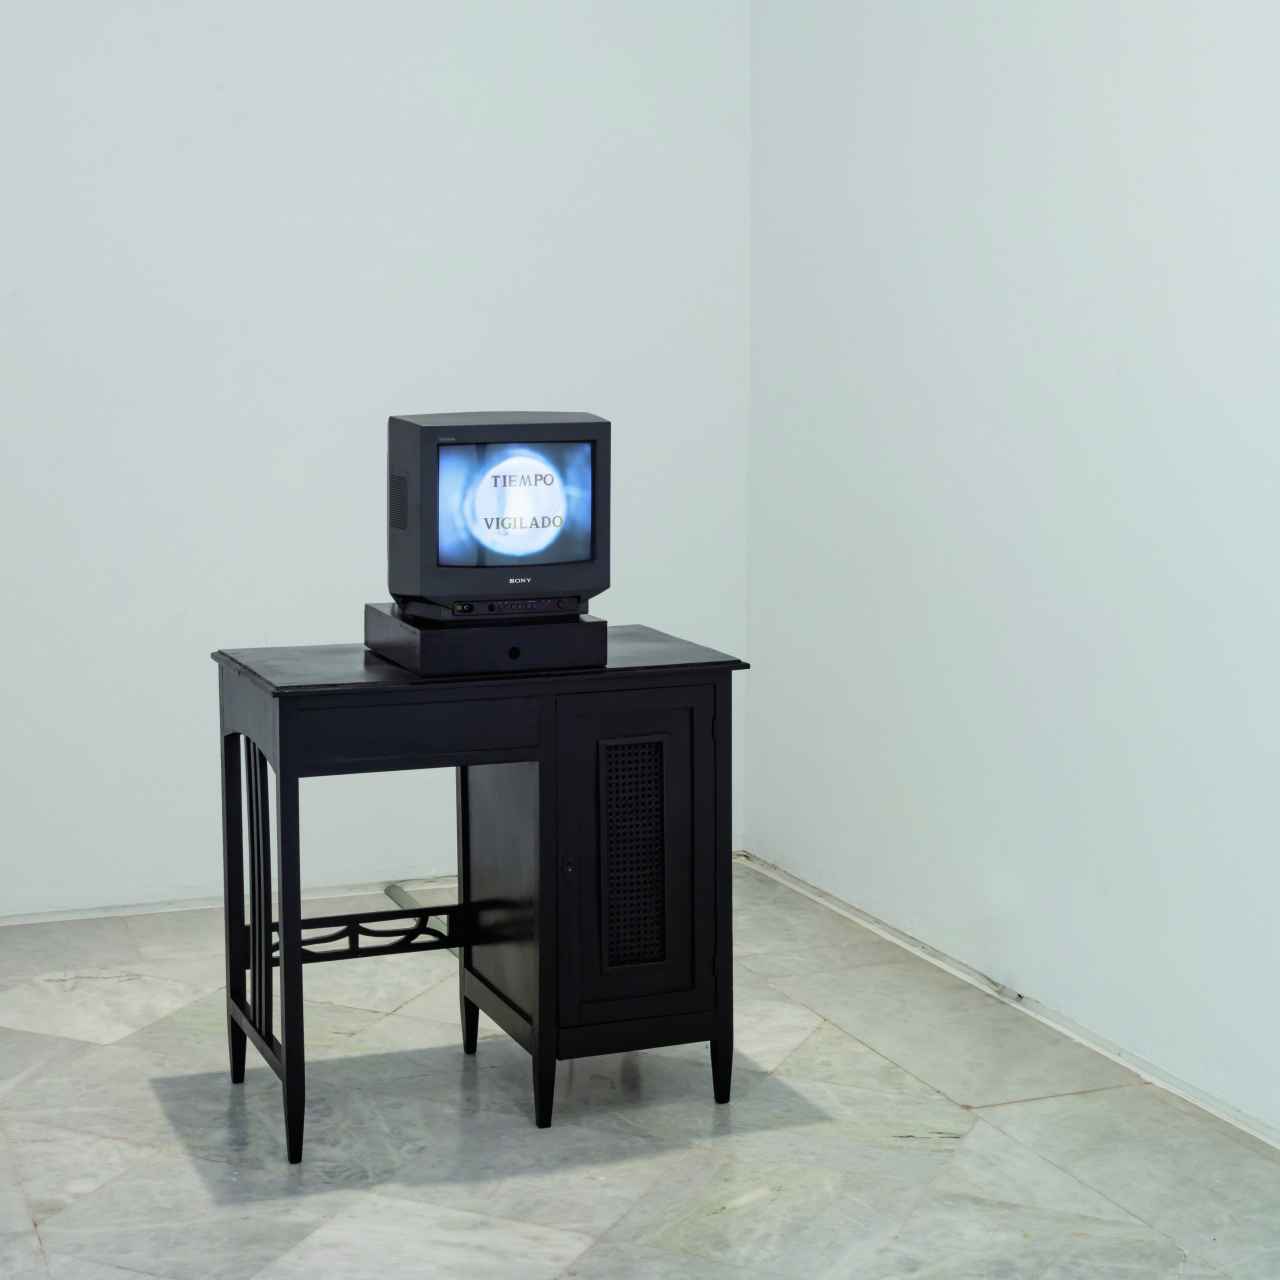 'Tiempo vigilado', 1998